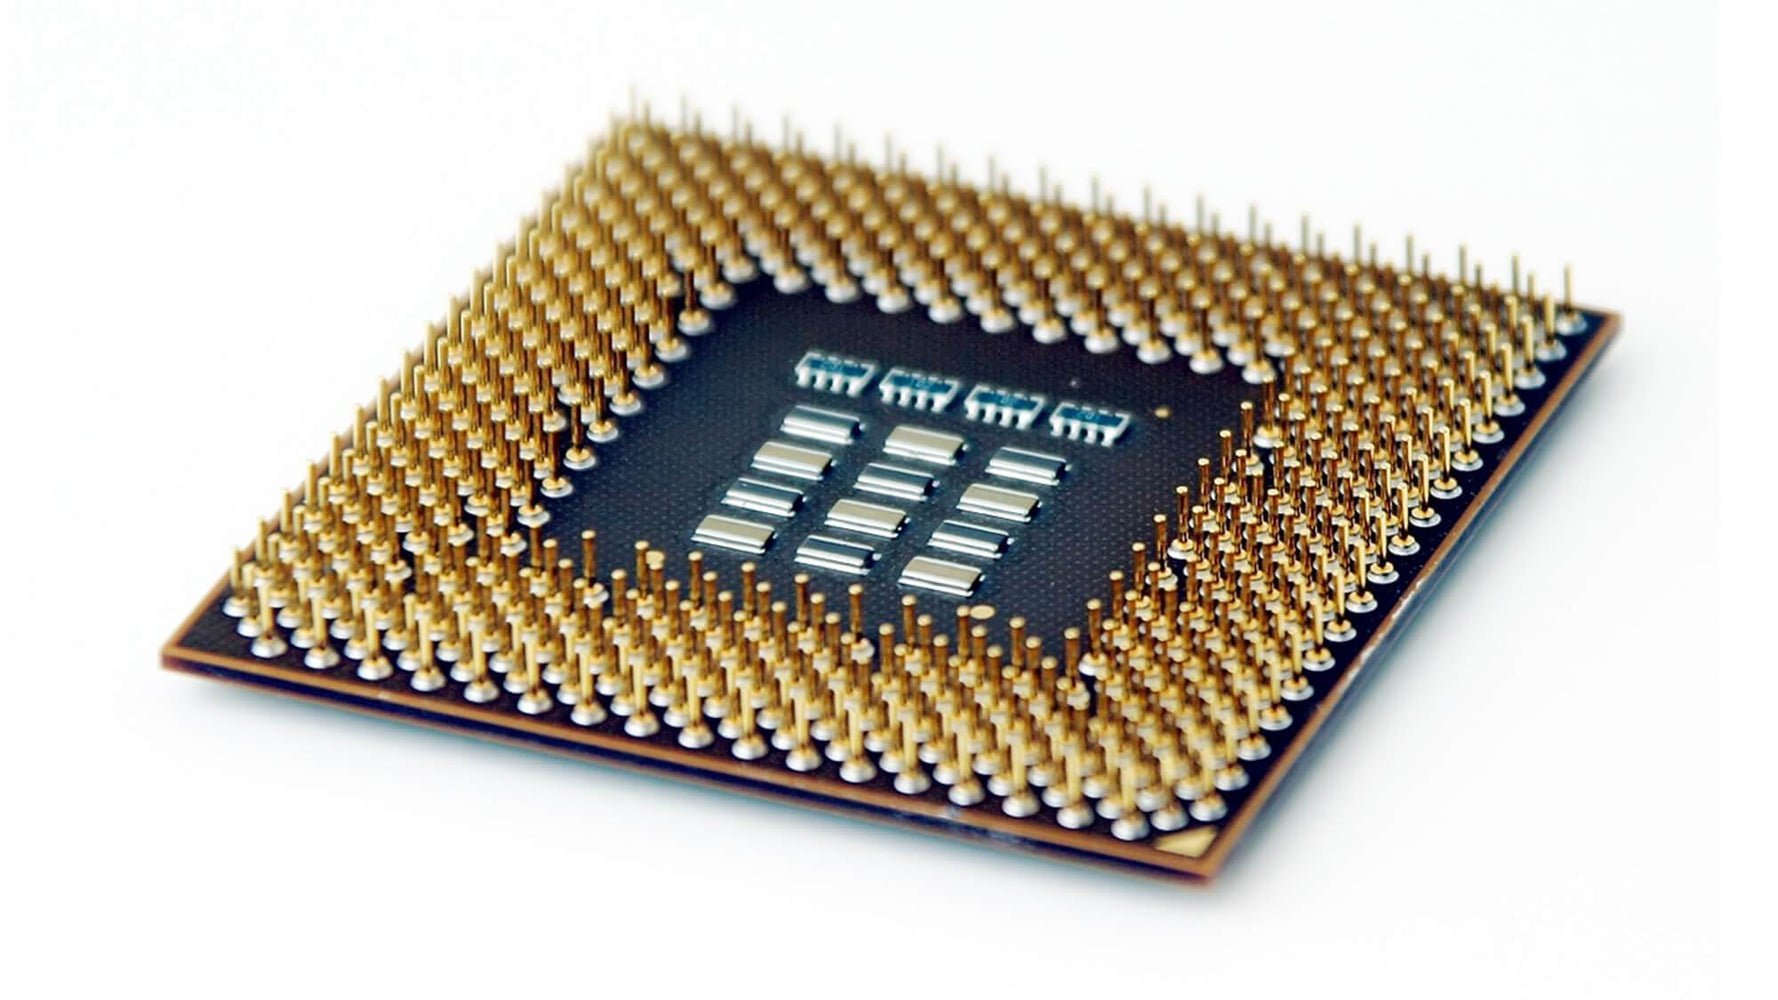 BX80601965 - Intel Core i7-965 Extreme Quad Core 3.20GHz 6.40GT/s QPI 8MB L3 Cache Socket FCLGA1366 Desktop Processor